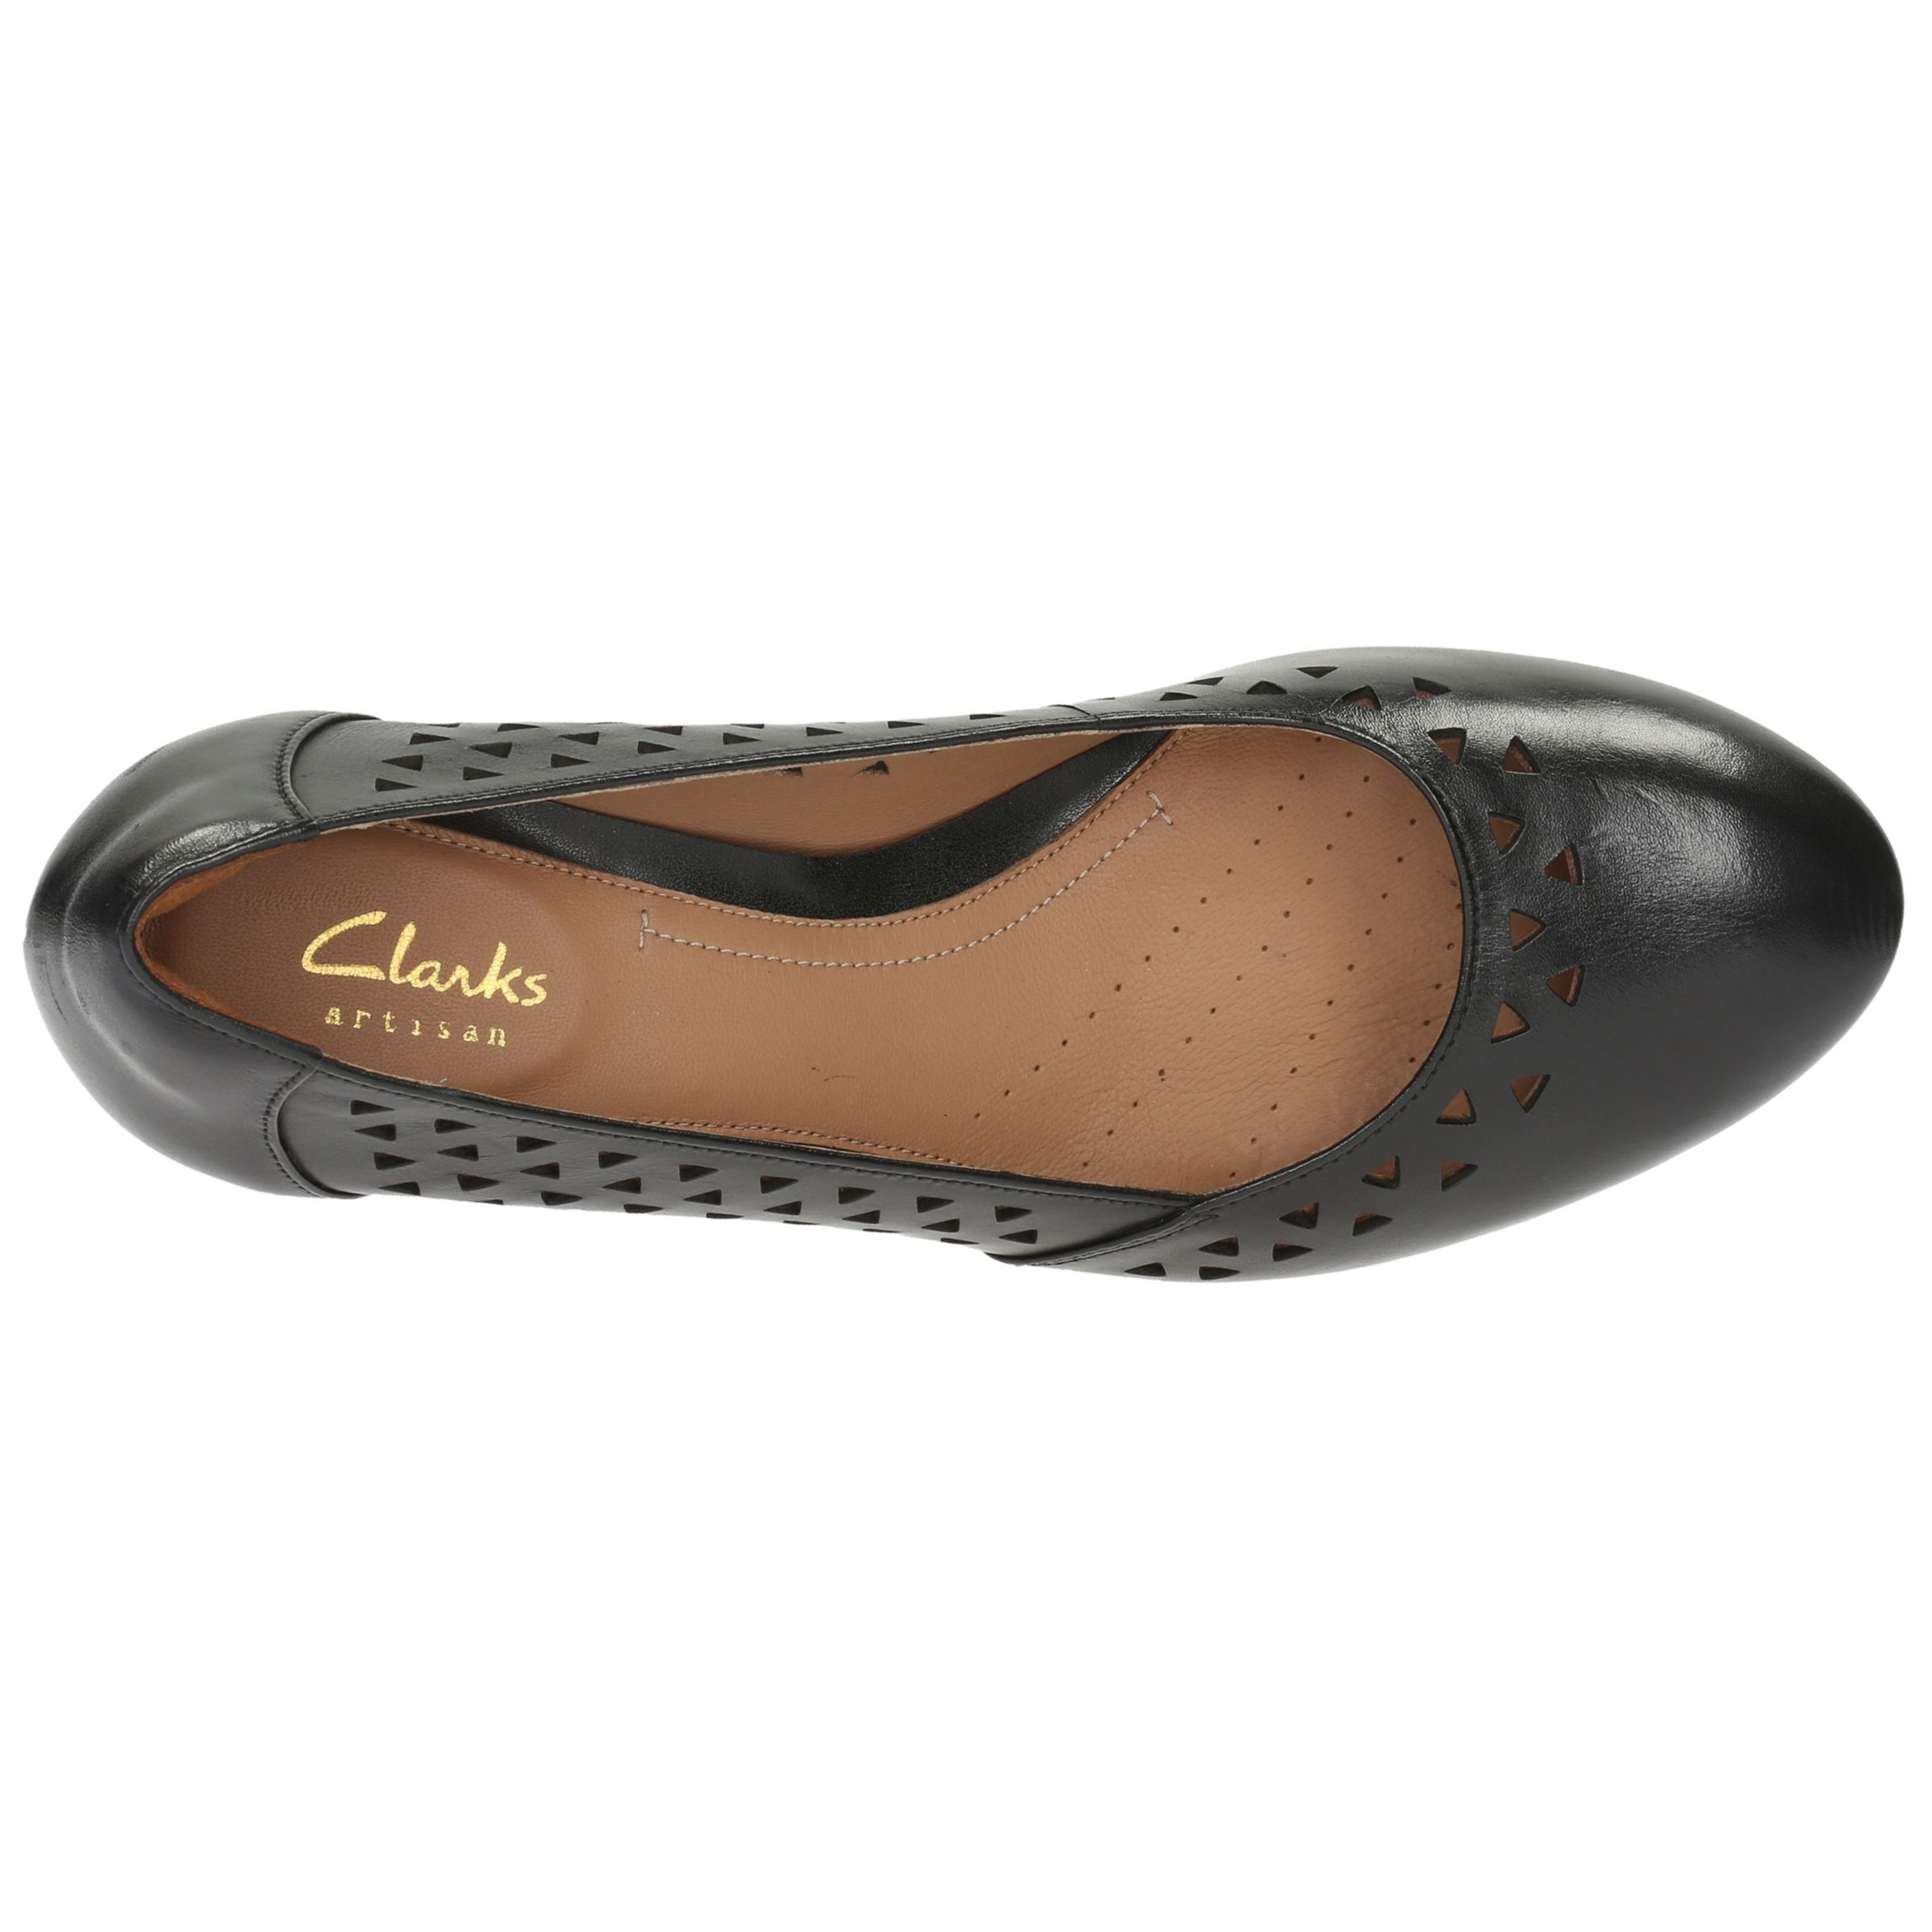 clarks shoes dallas